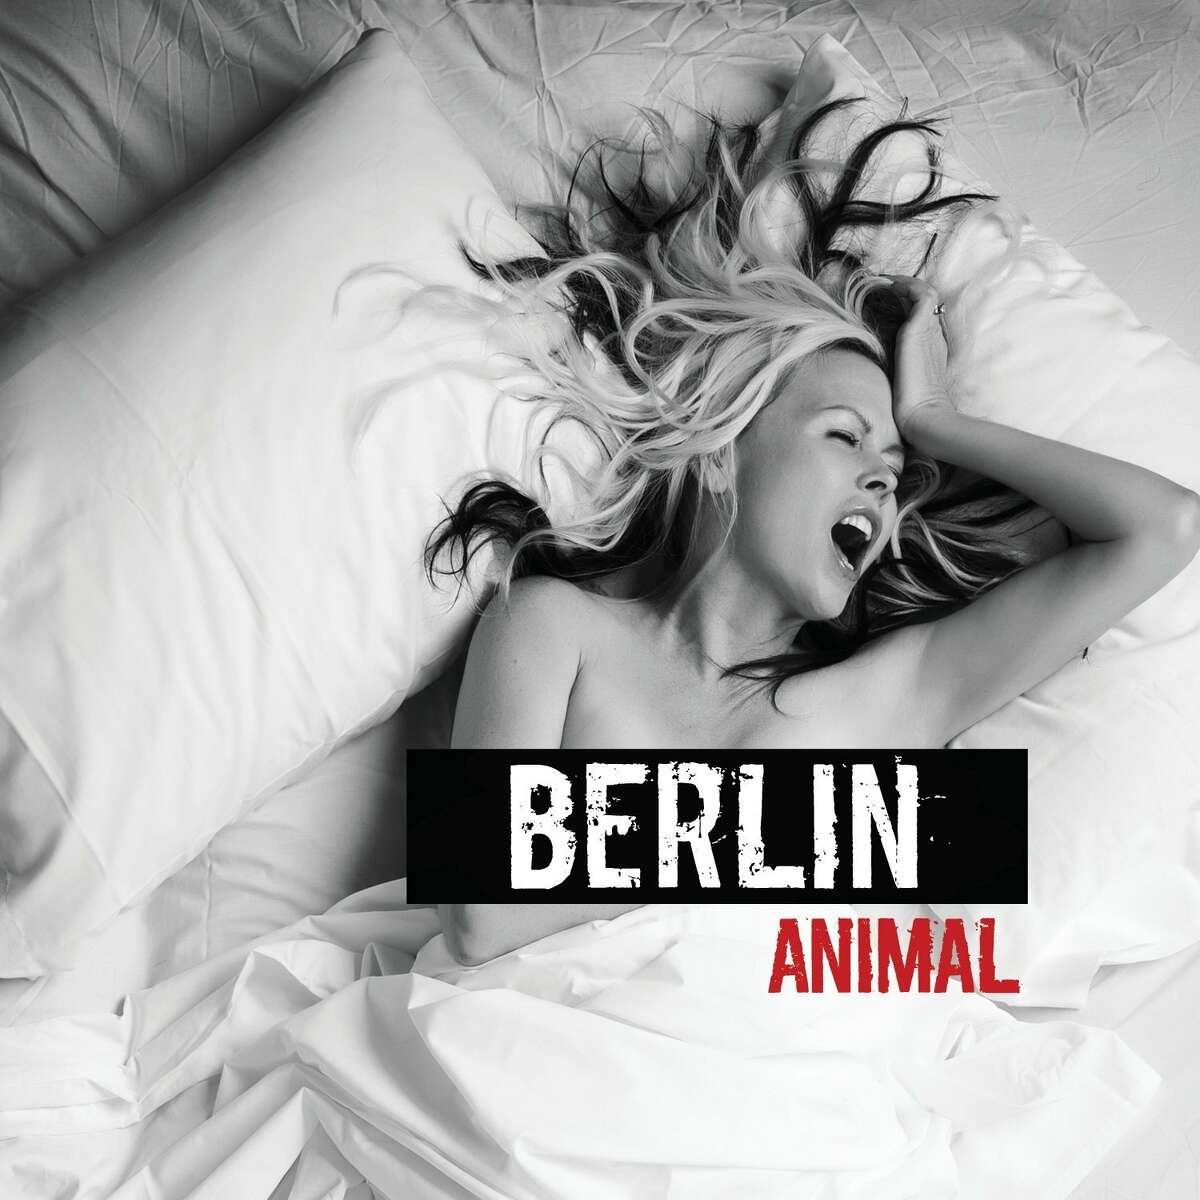 "Animal" by Berlin